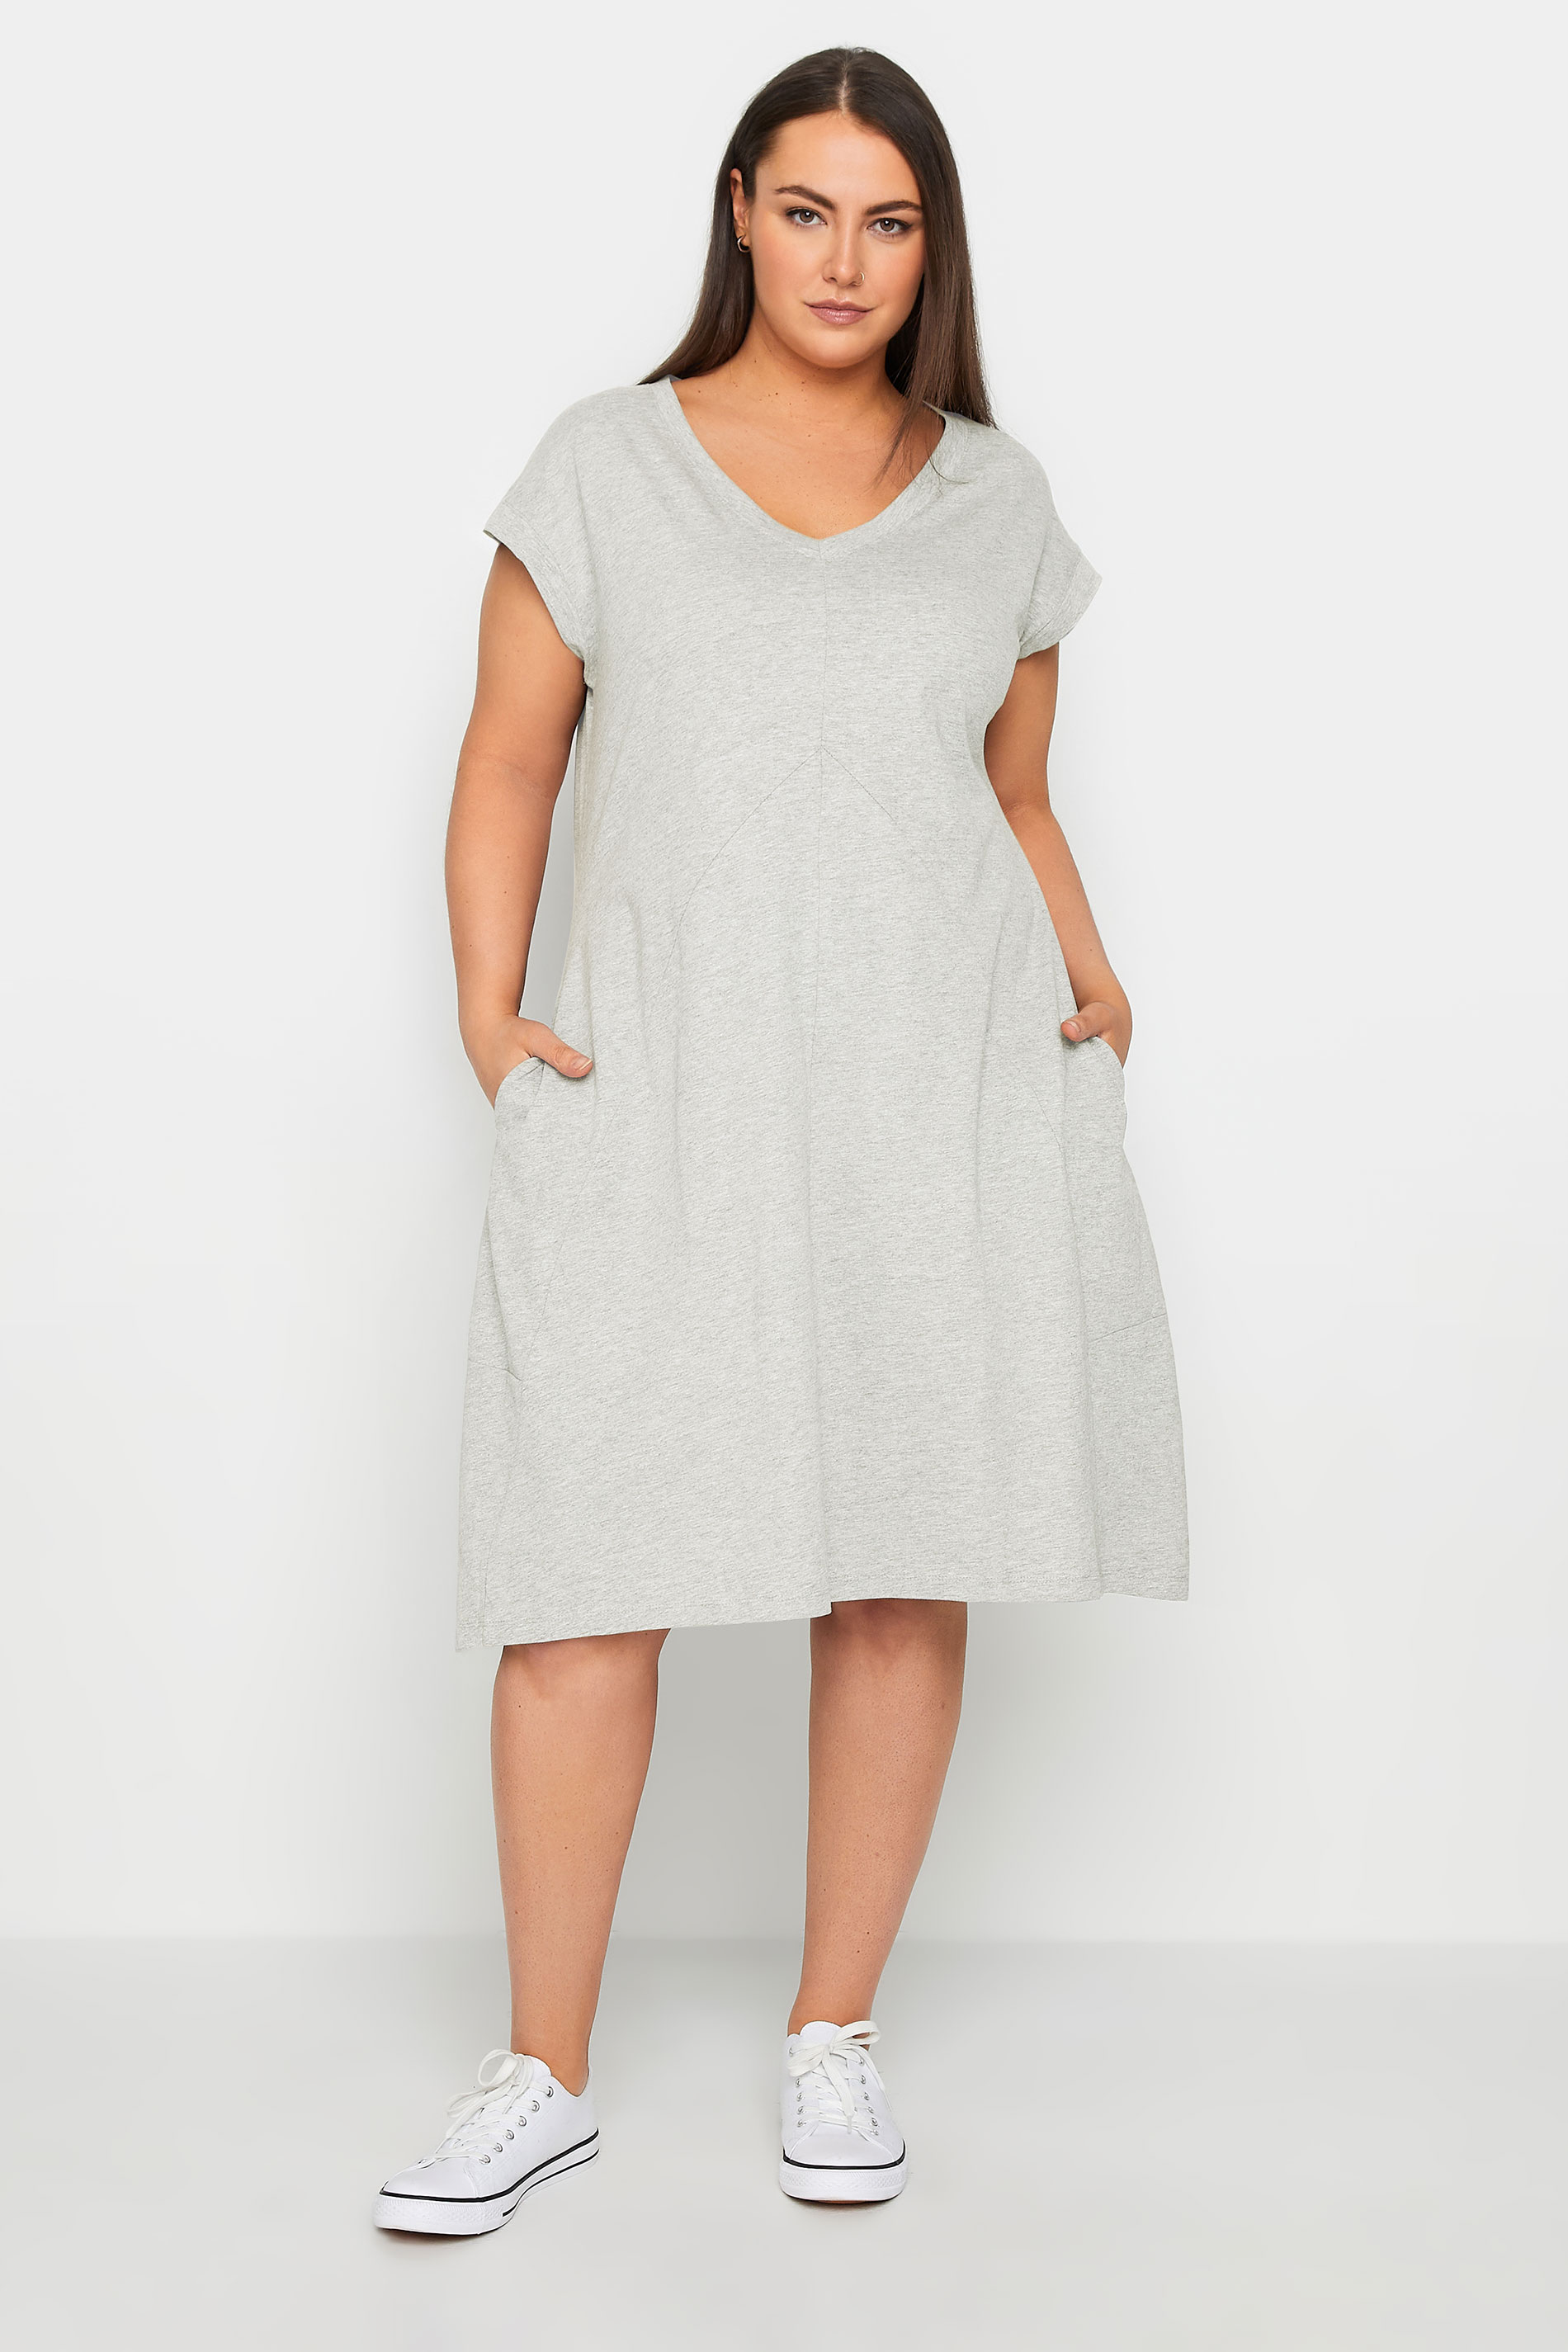 Lilly Grey Plain Dress 1